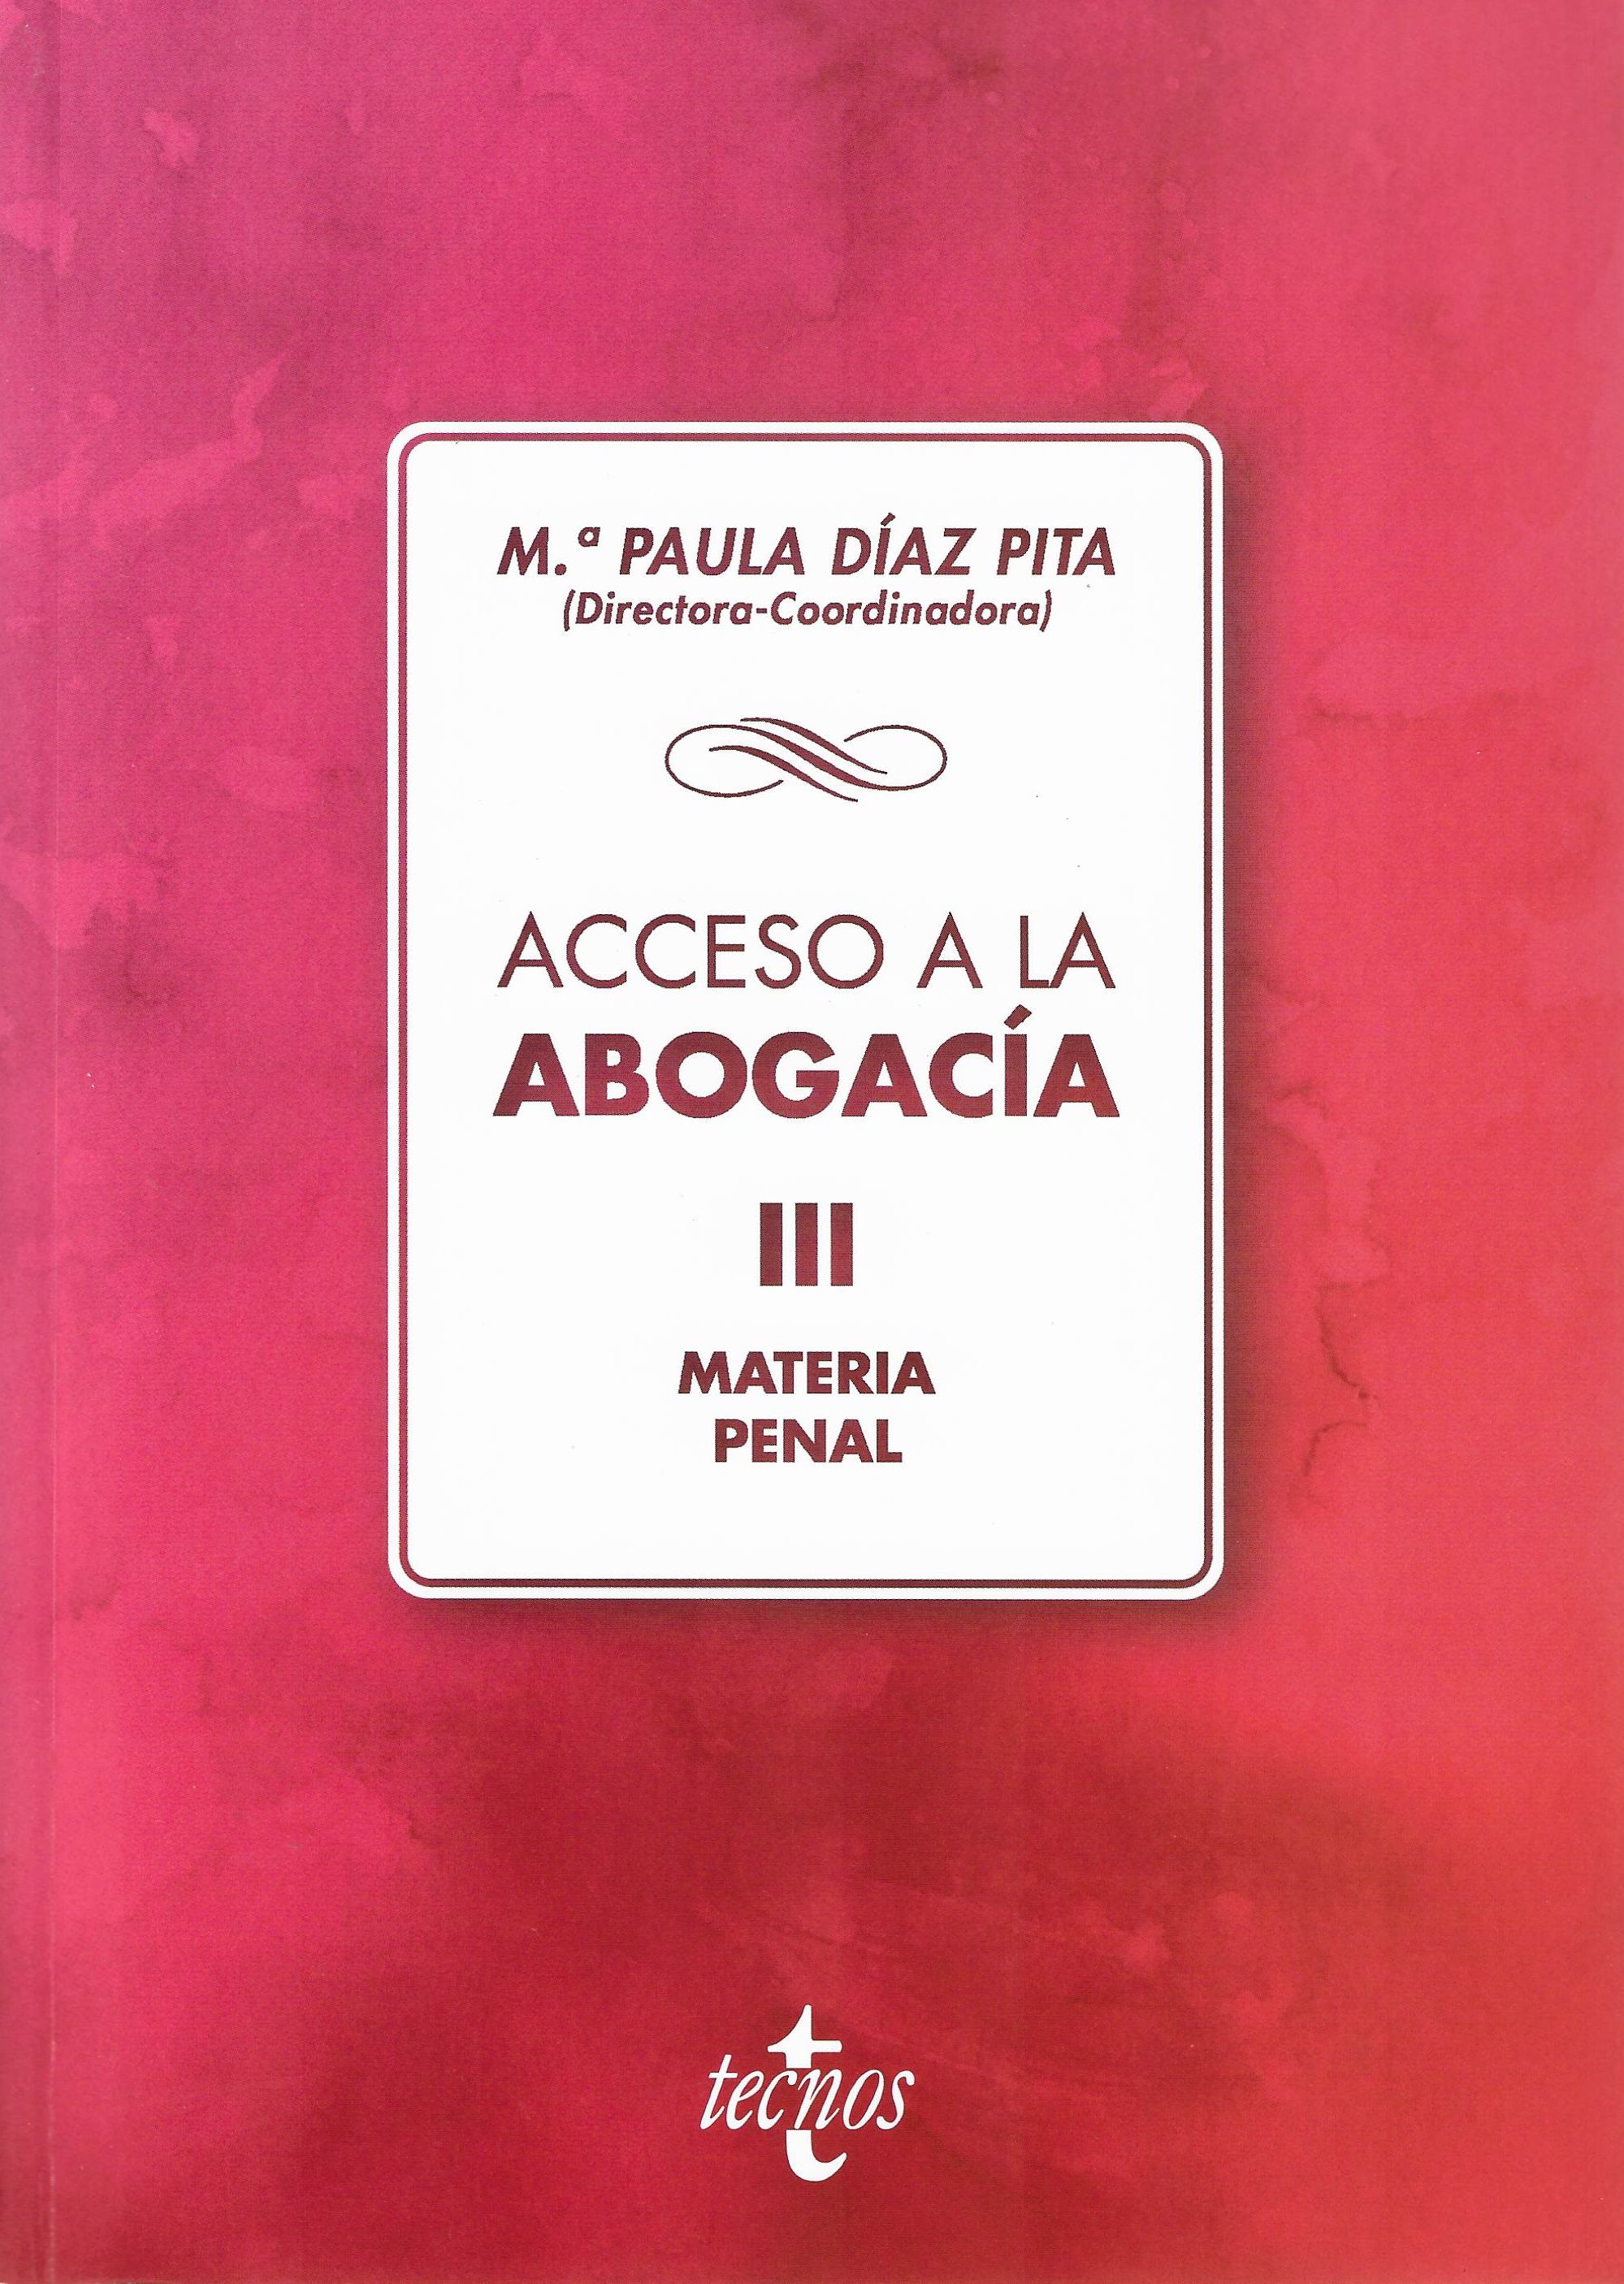 Imagen de portada del libro Acceso a la abogacía